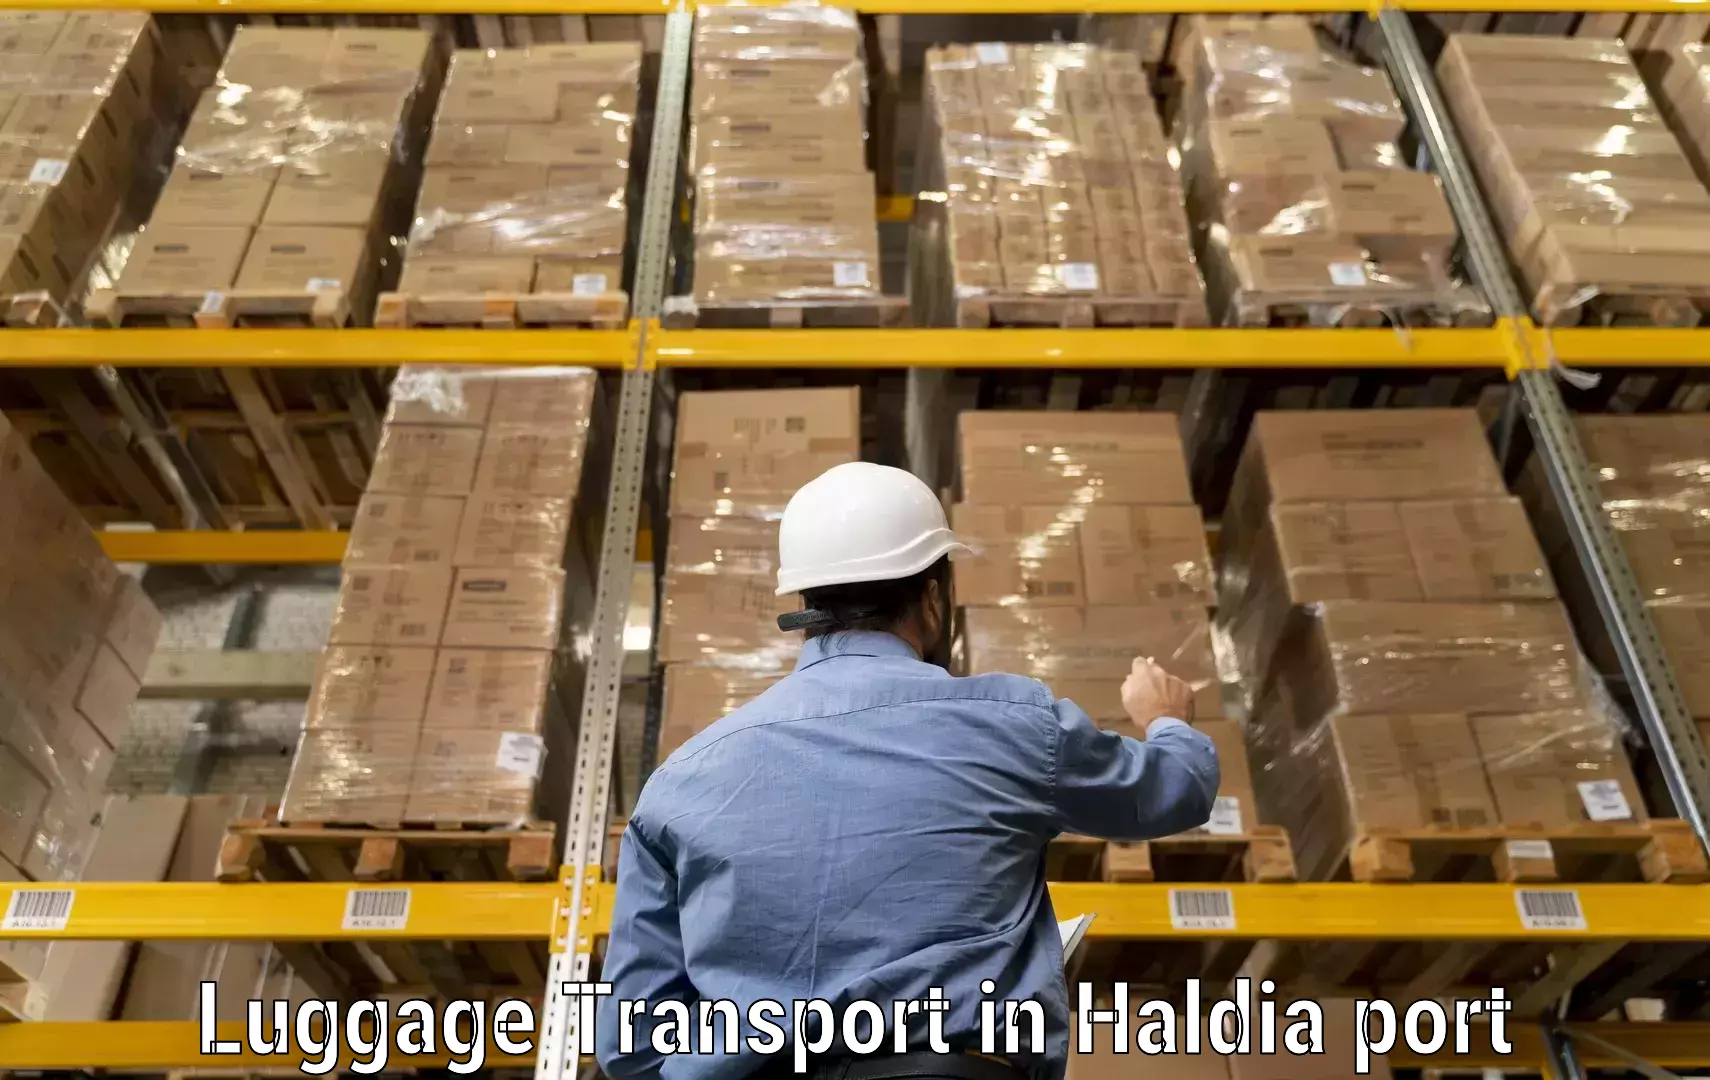 Baggage transport quote in Haldia port